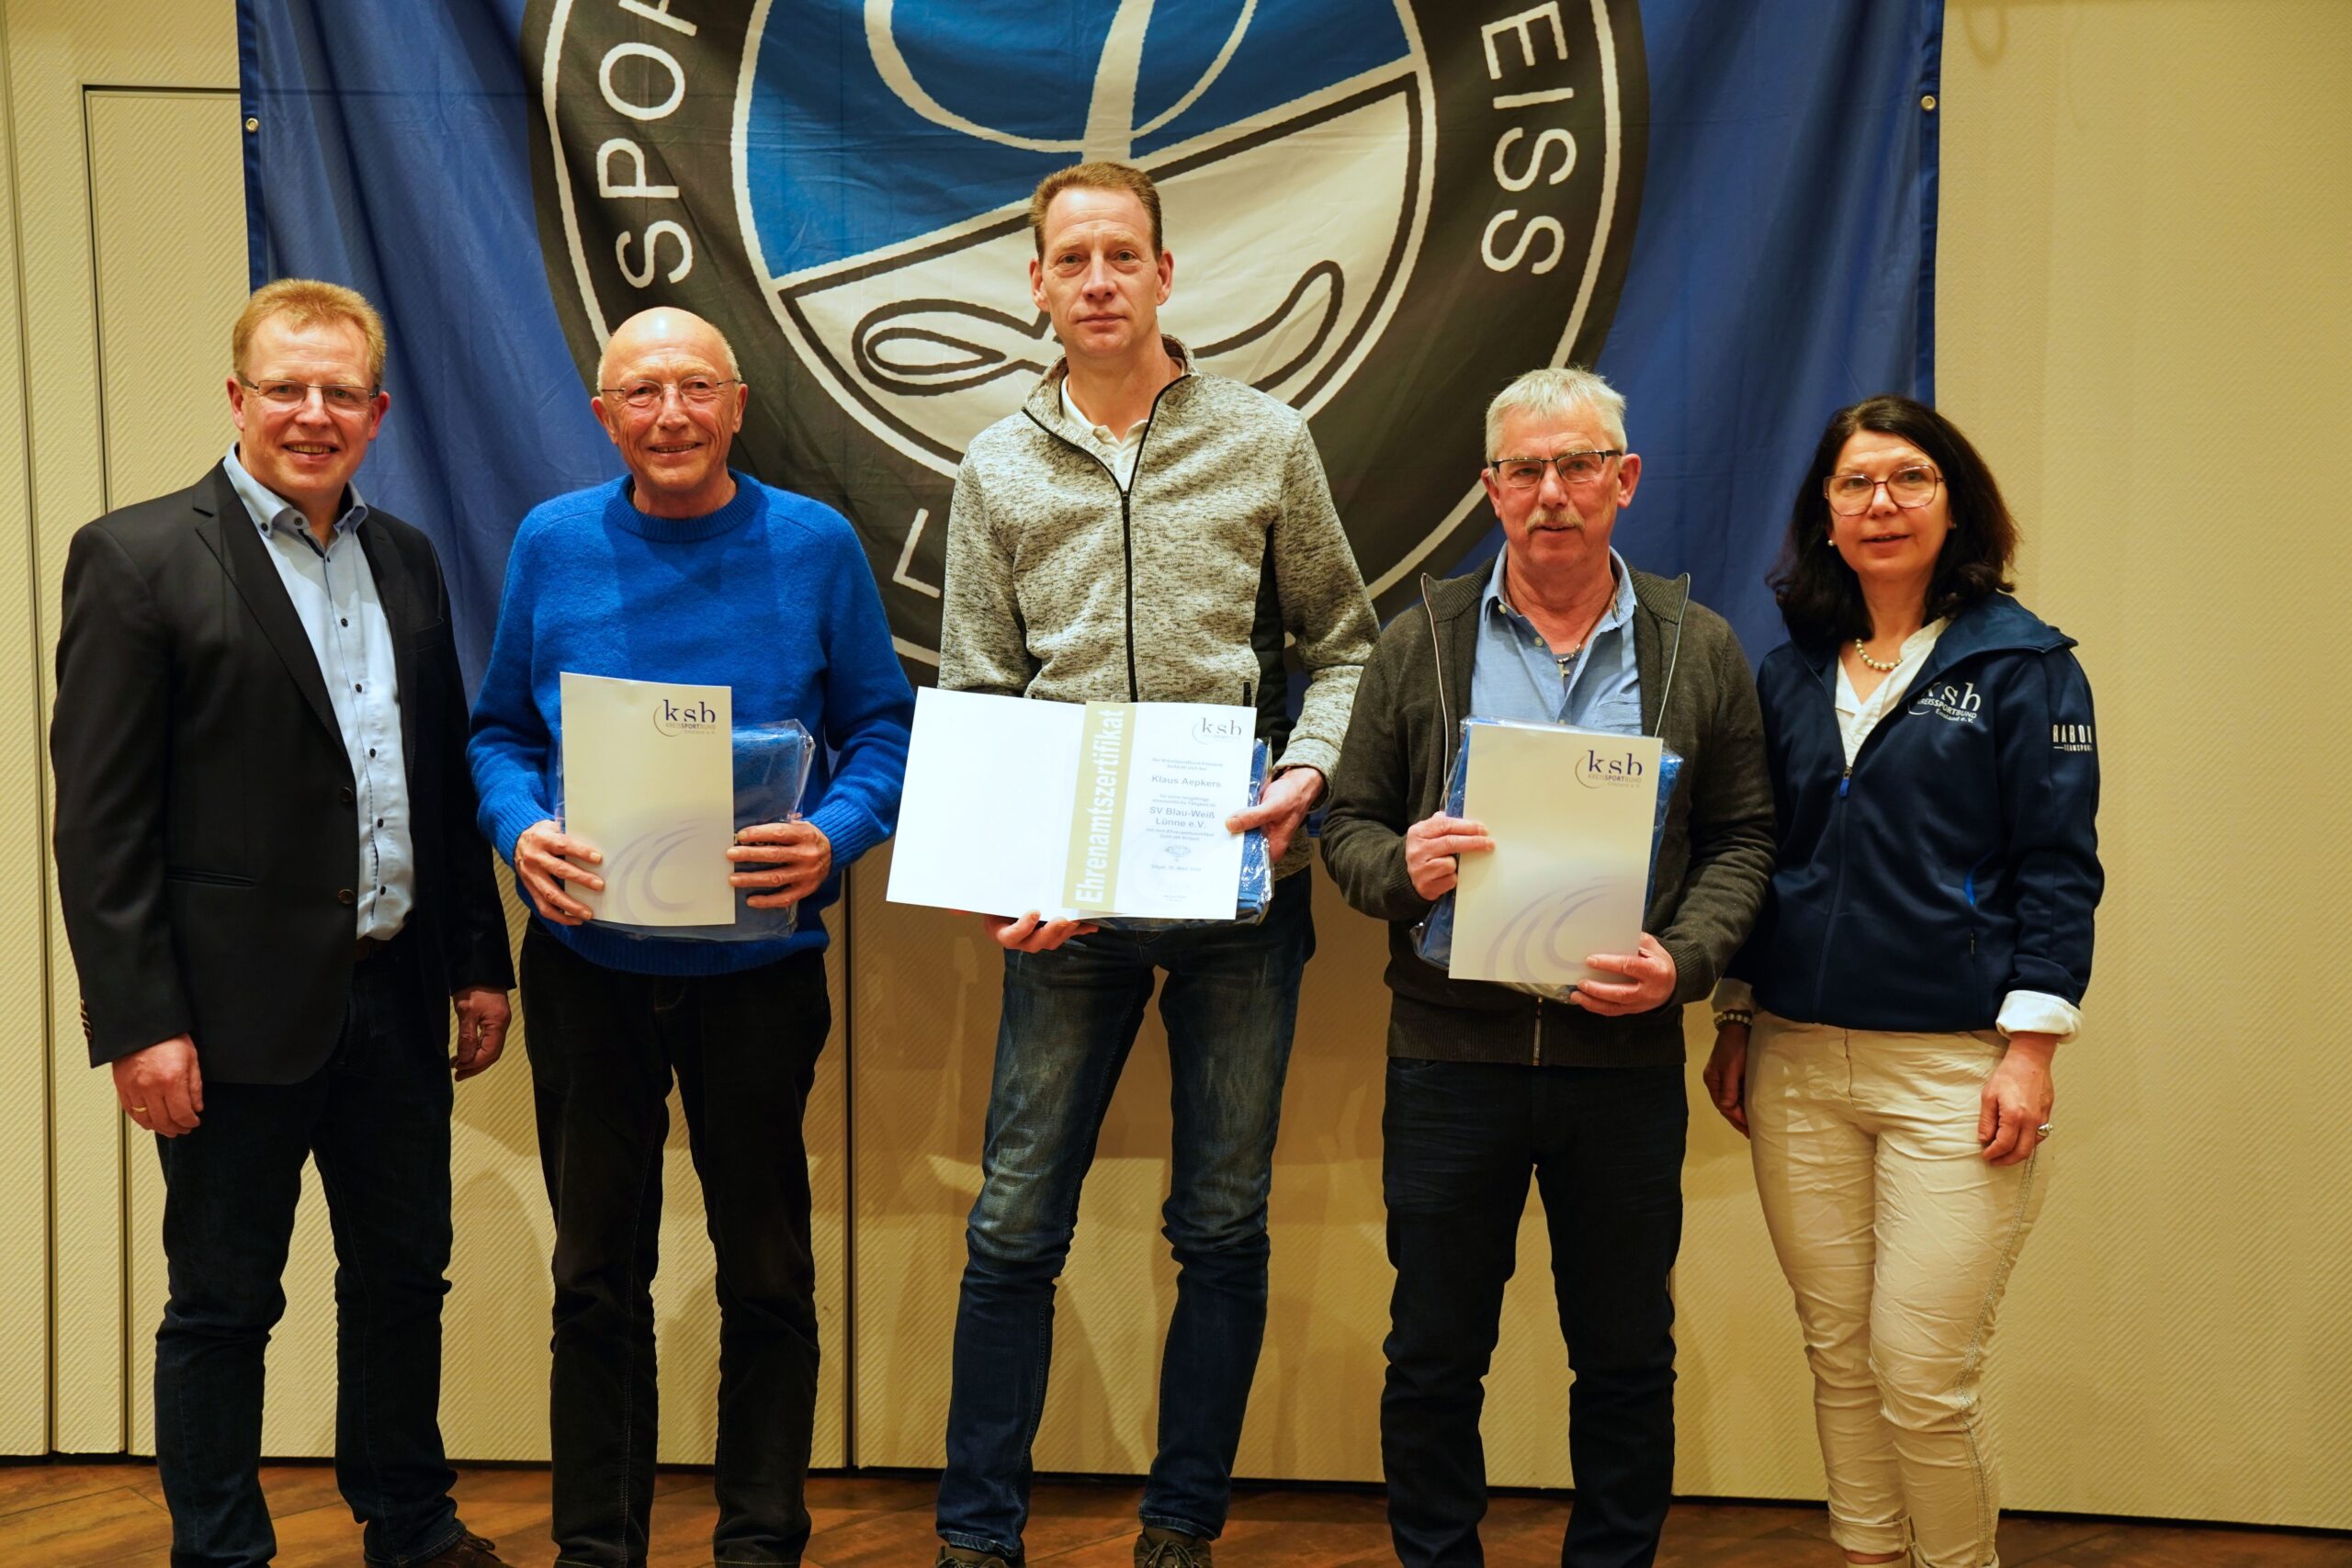 Die geehrten Mitglieder erhielten Urkunden und Präsente.
Foto: KSB Emsland